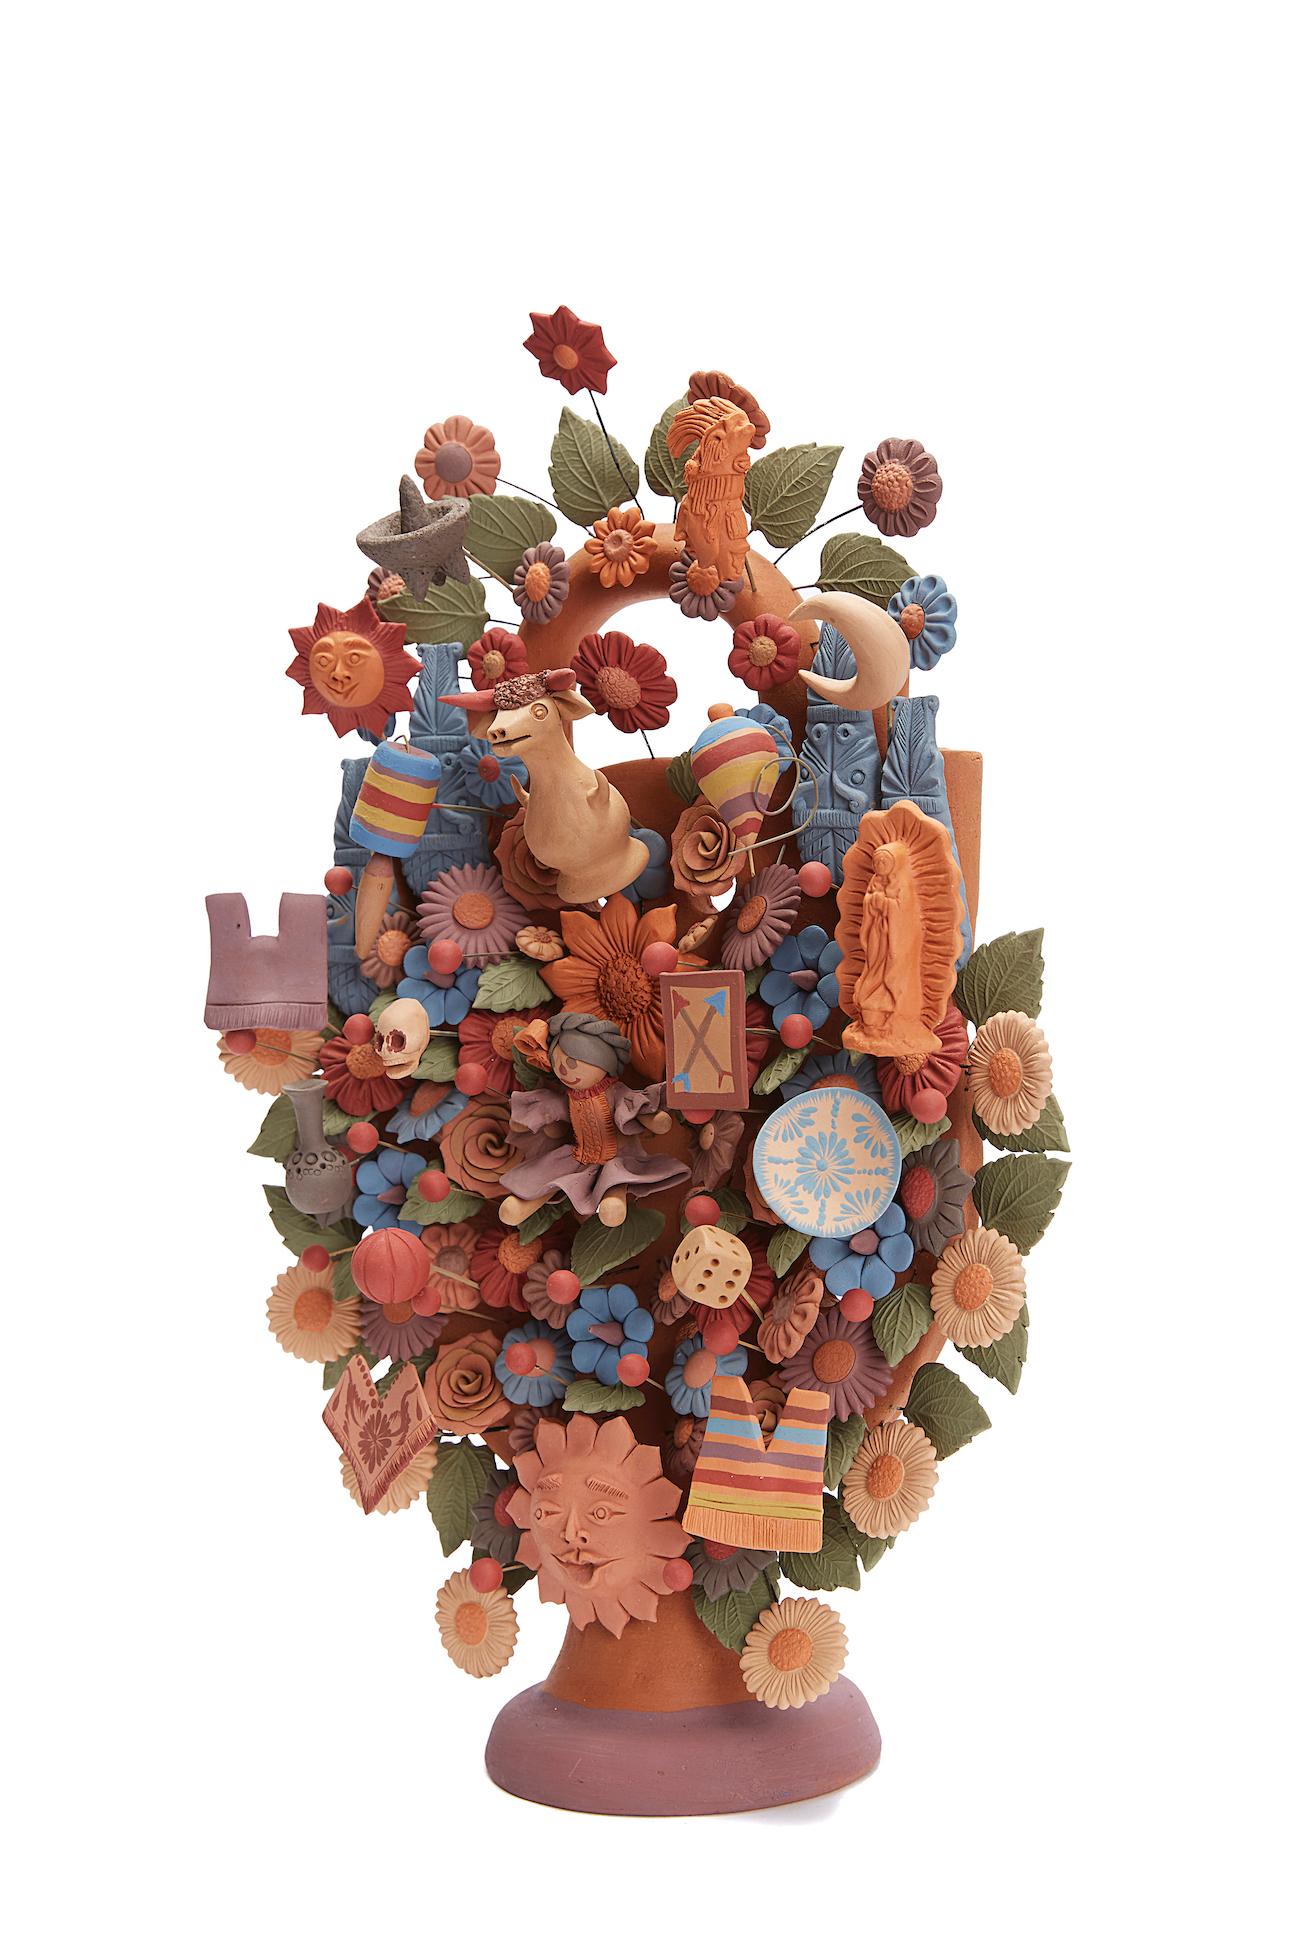 Cecilio Sanchez Fierro Abstract Sculpture - Arbol de Artesanias - Handicraft Tree  / Ceramics Mexican Folk Art Clay